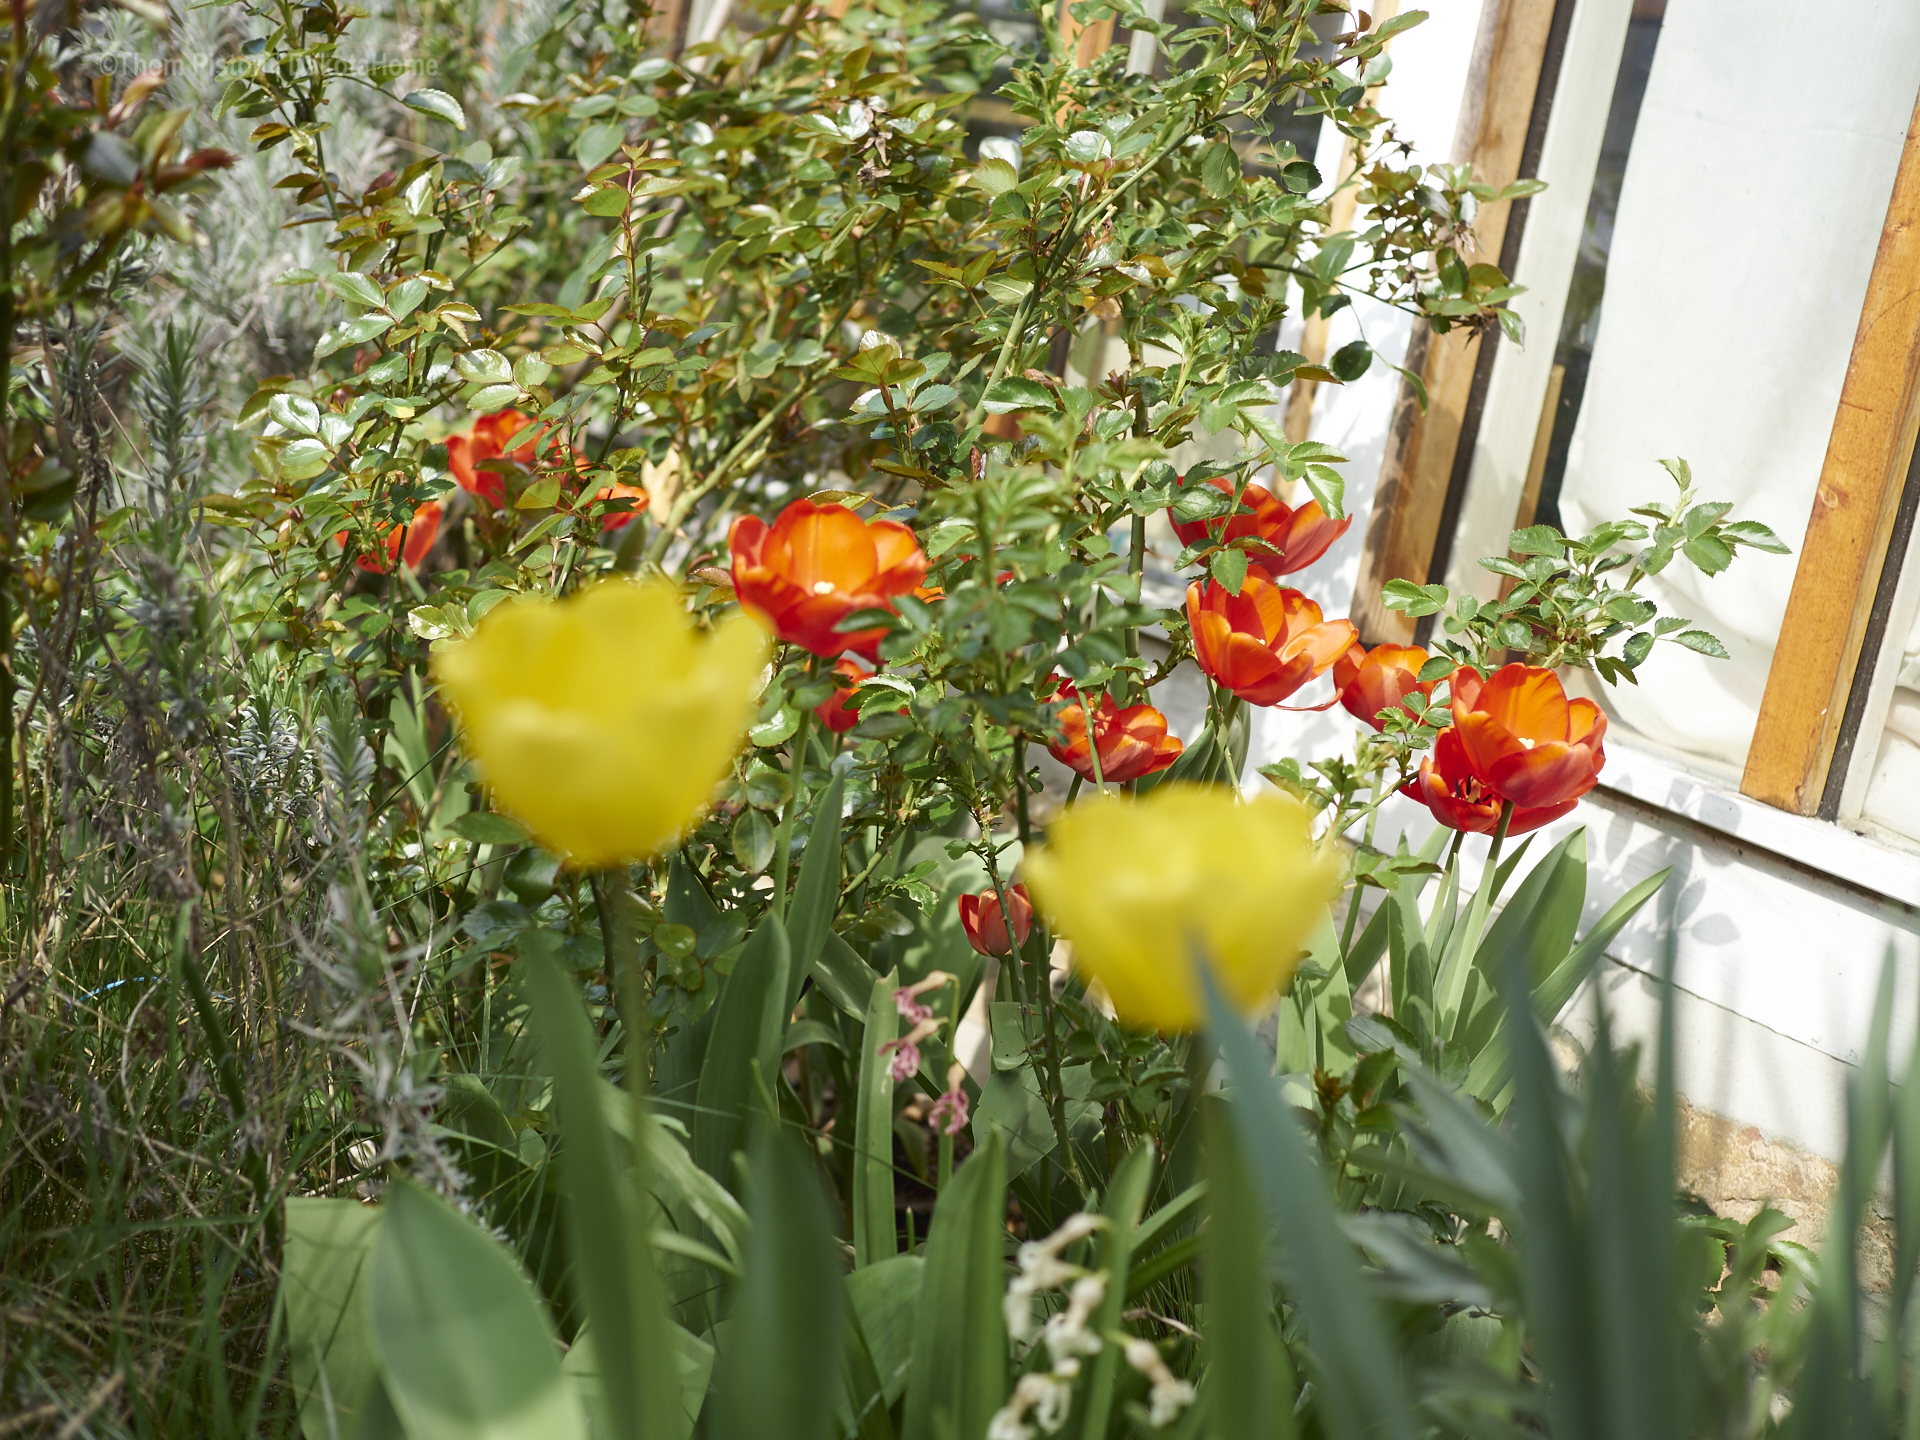 überall Tulpen..warum auch immer..aber ihr seht wir könn auch Blumen..haha